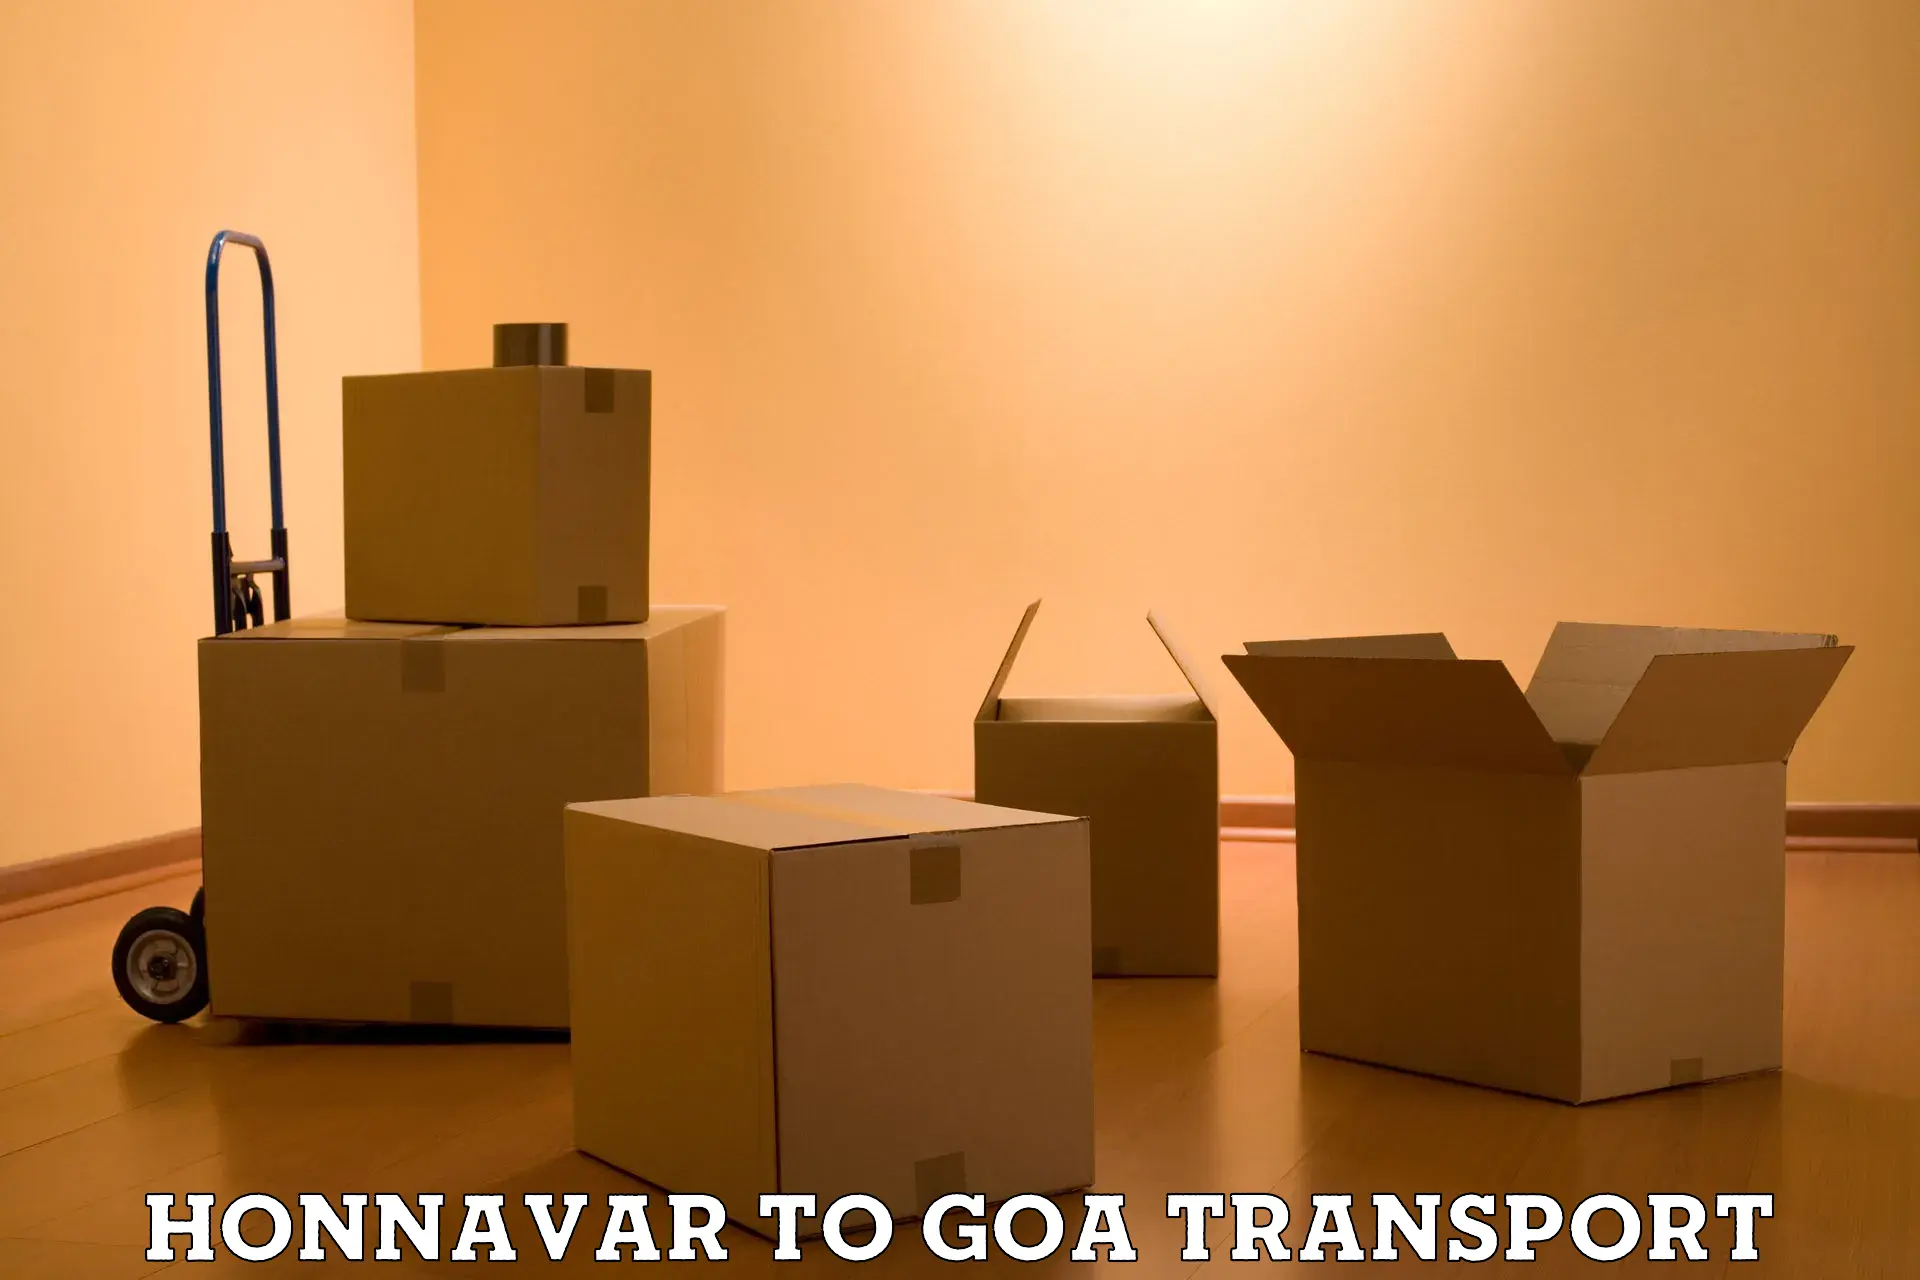 Commercial transport service Honnavar to Vasco da Gama